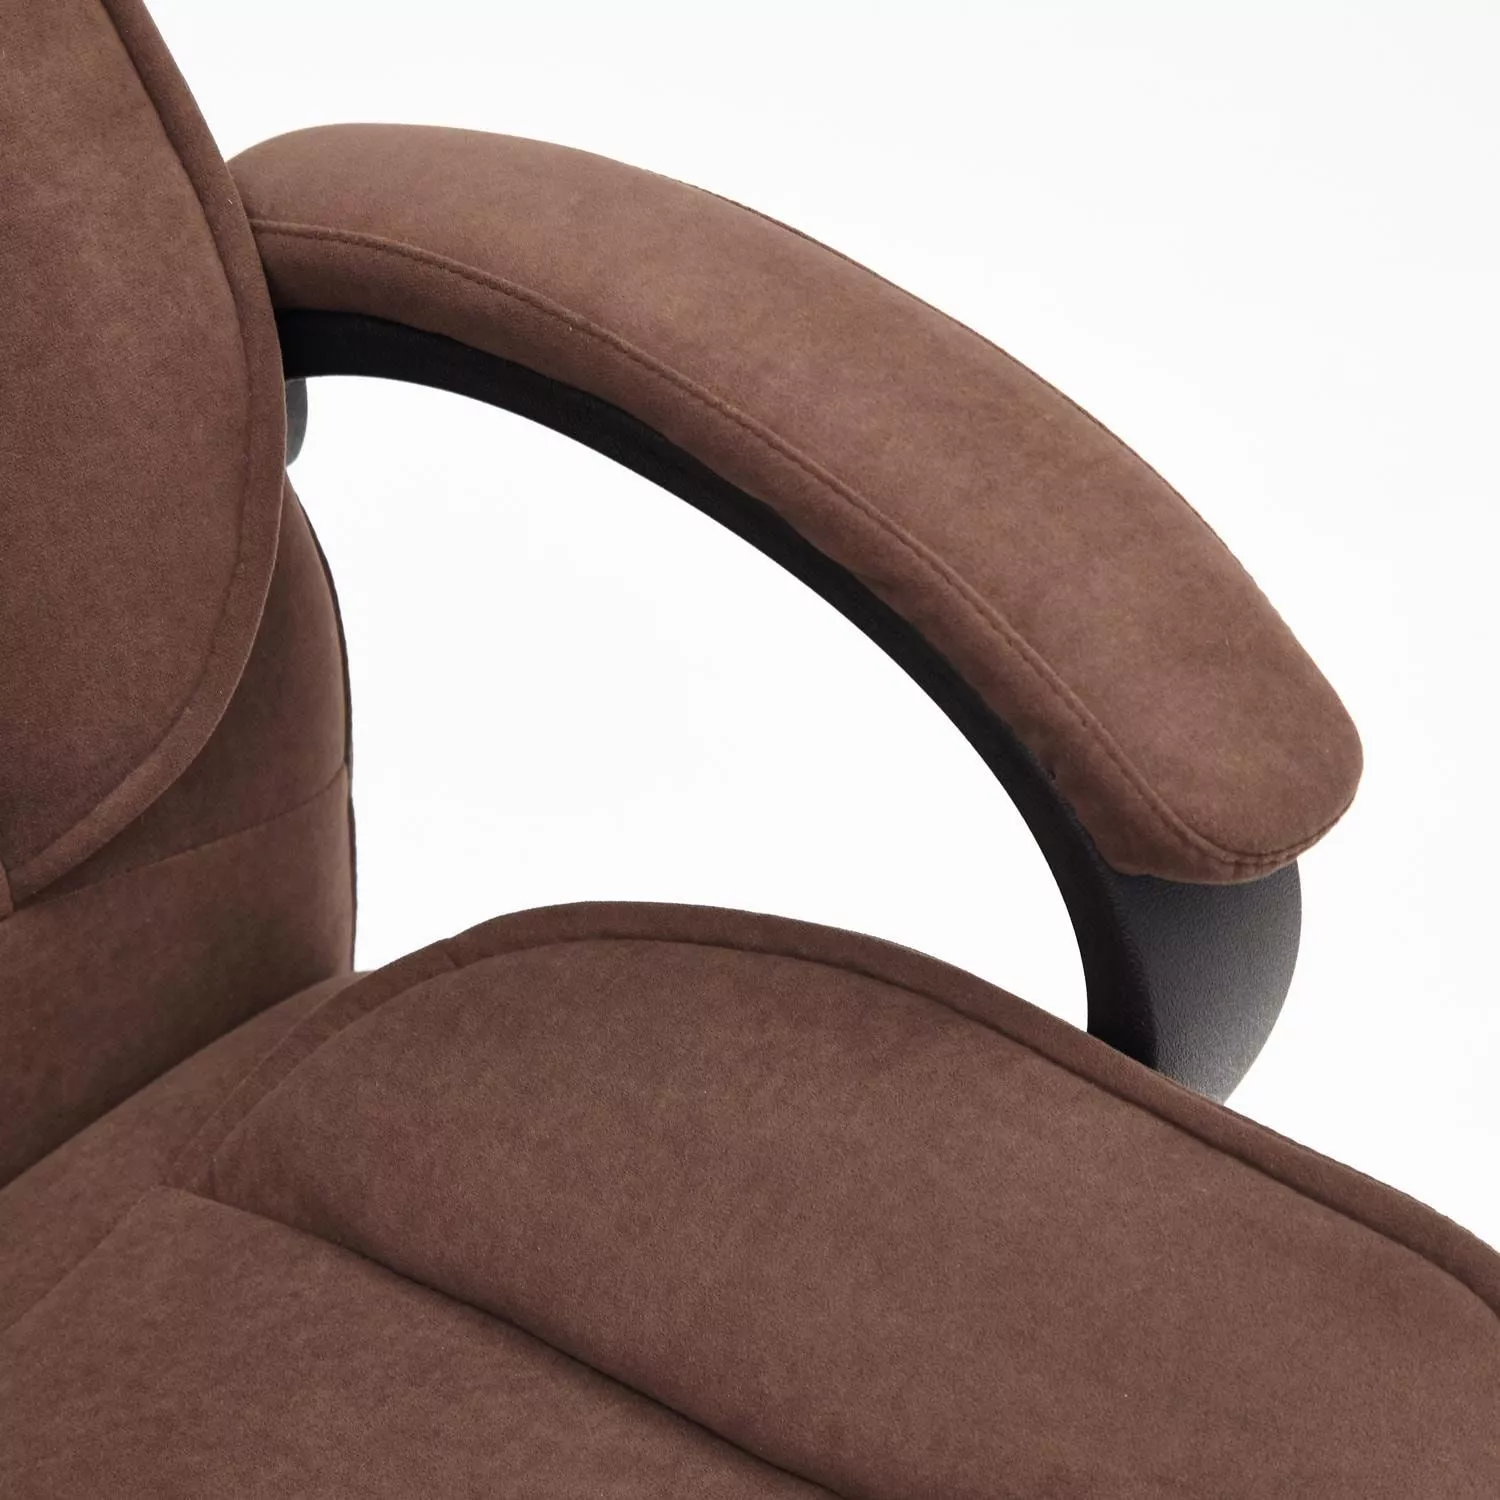 Кресло для руководителя OREON флок коричневый